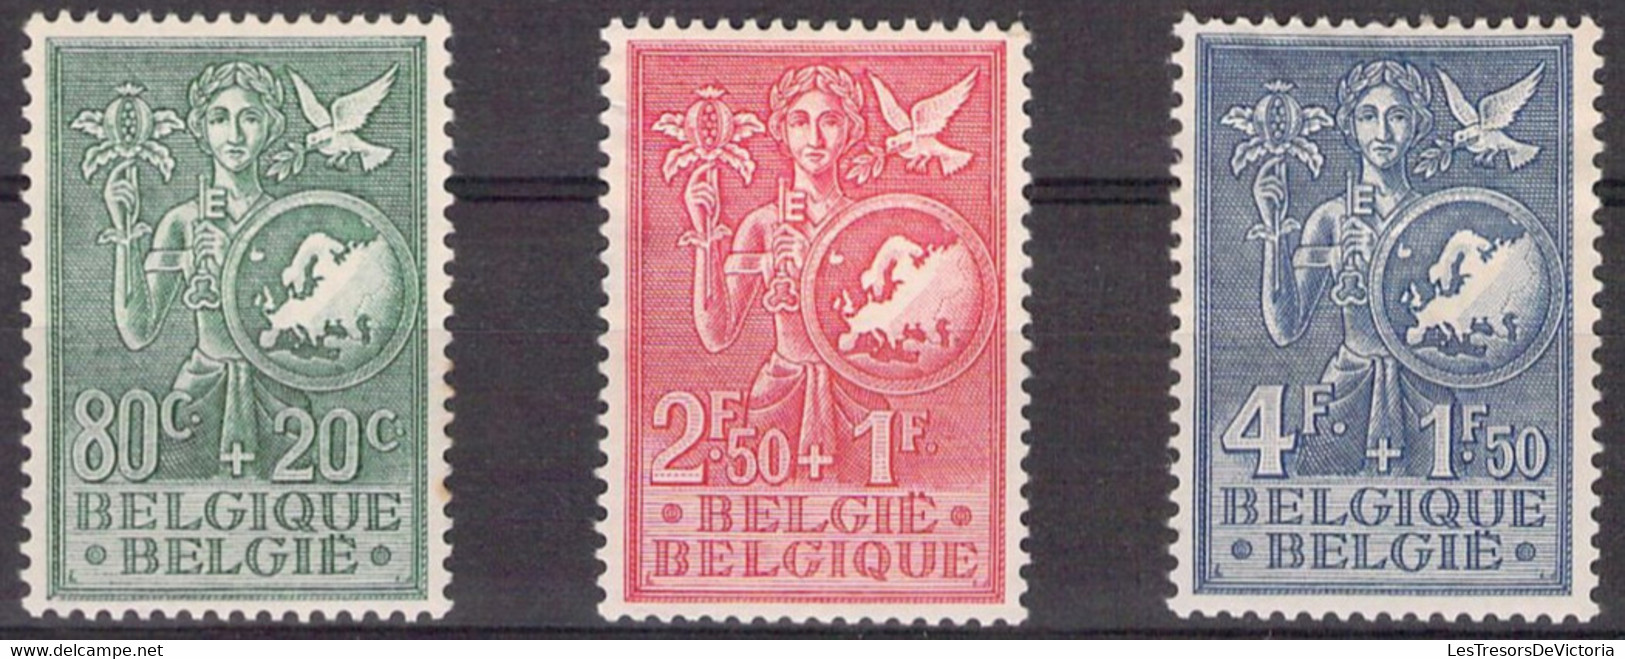 Belgique -  COB 927/29 * - 1953 - Cote 45 COB 2022 - Aminci Sur Le 929 - Prix De Départ 5 Euros - Ungebraucht